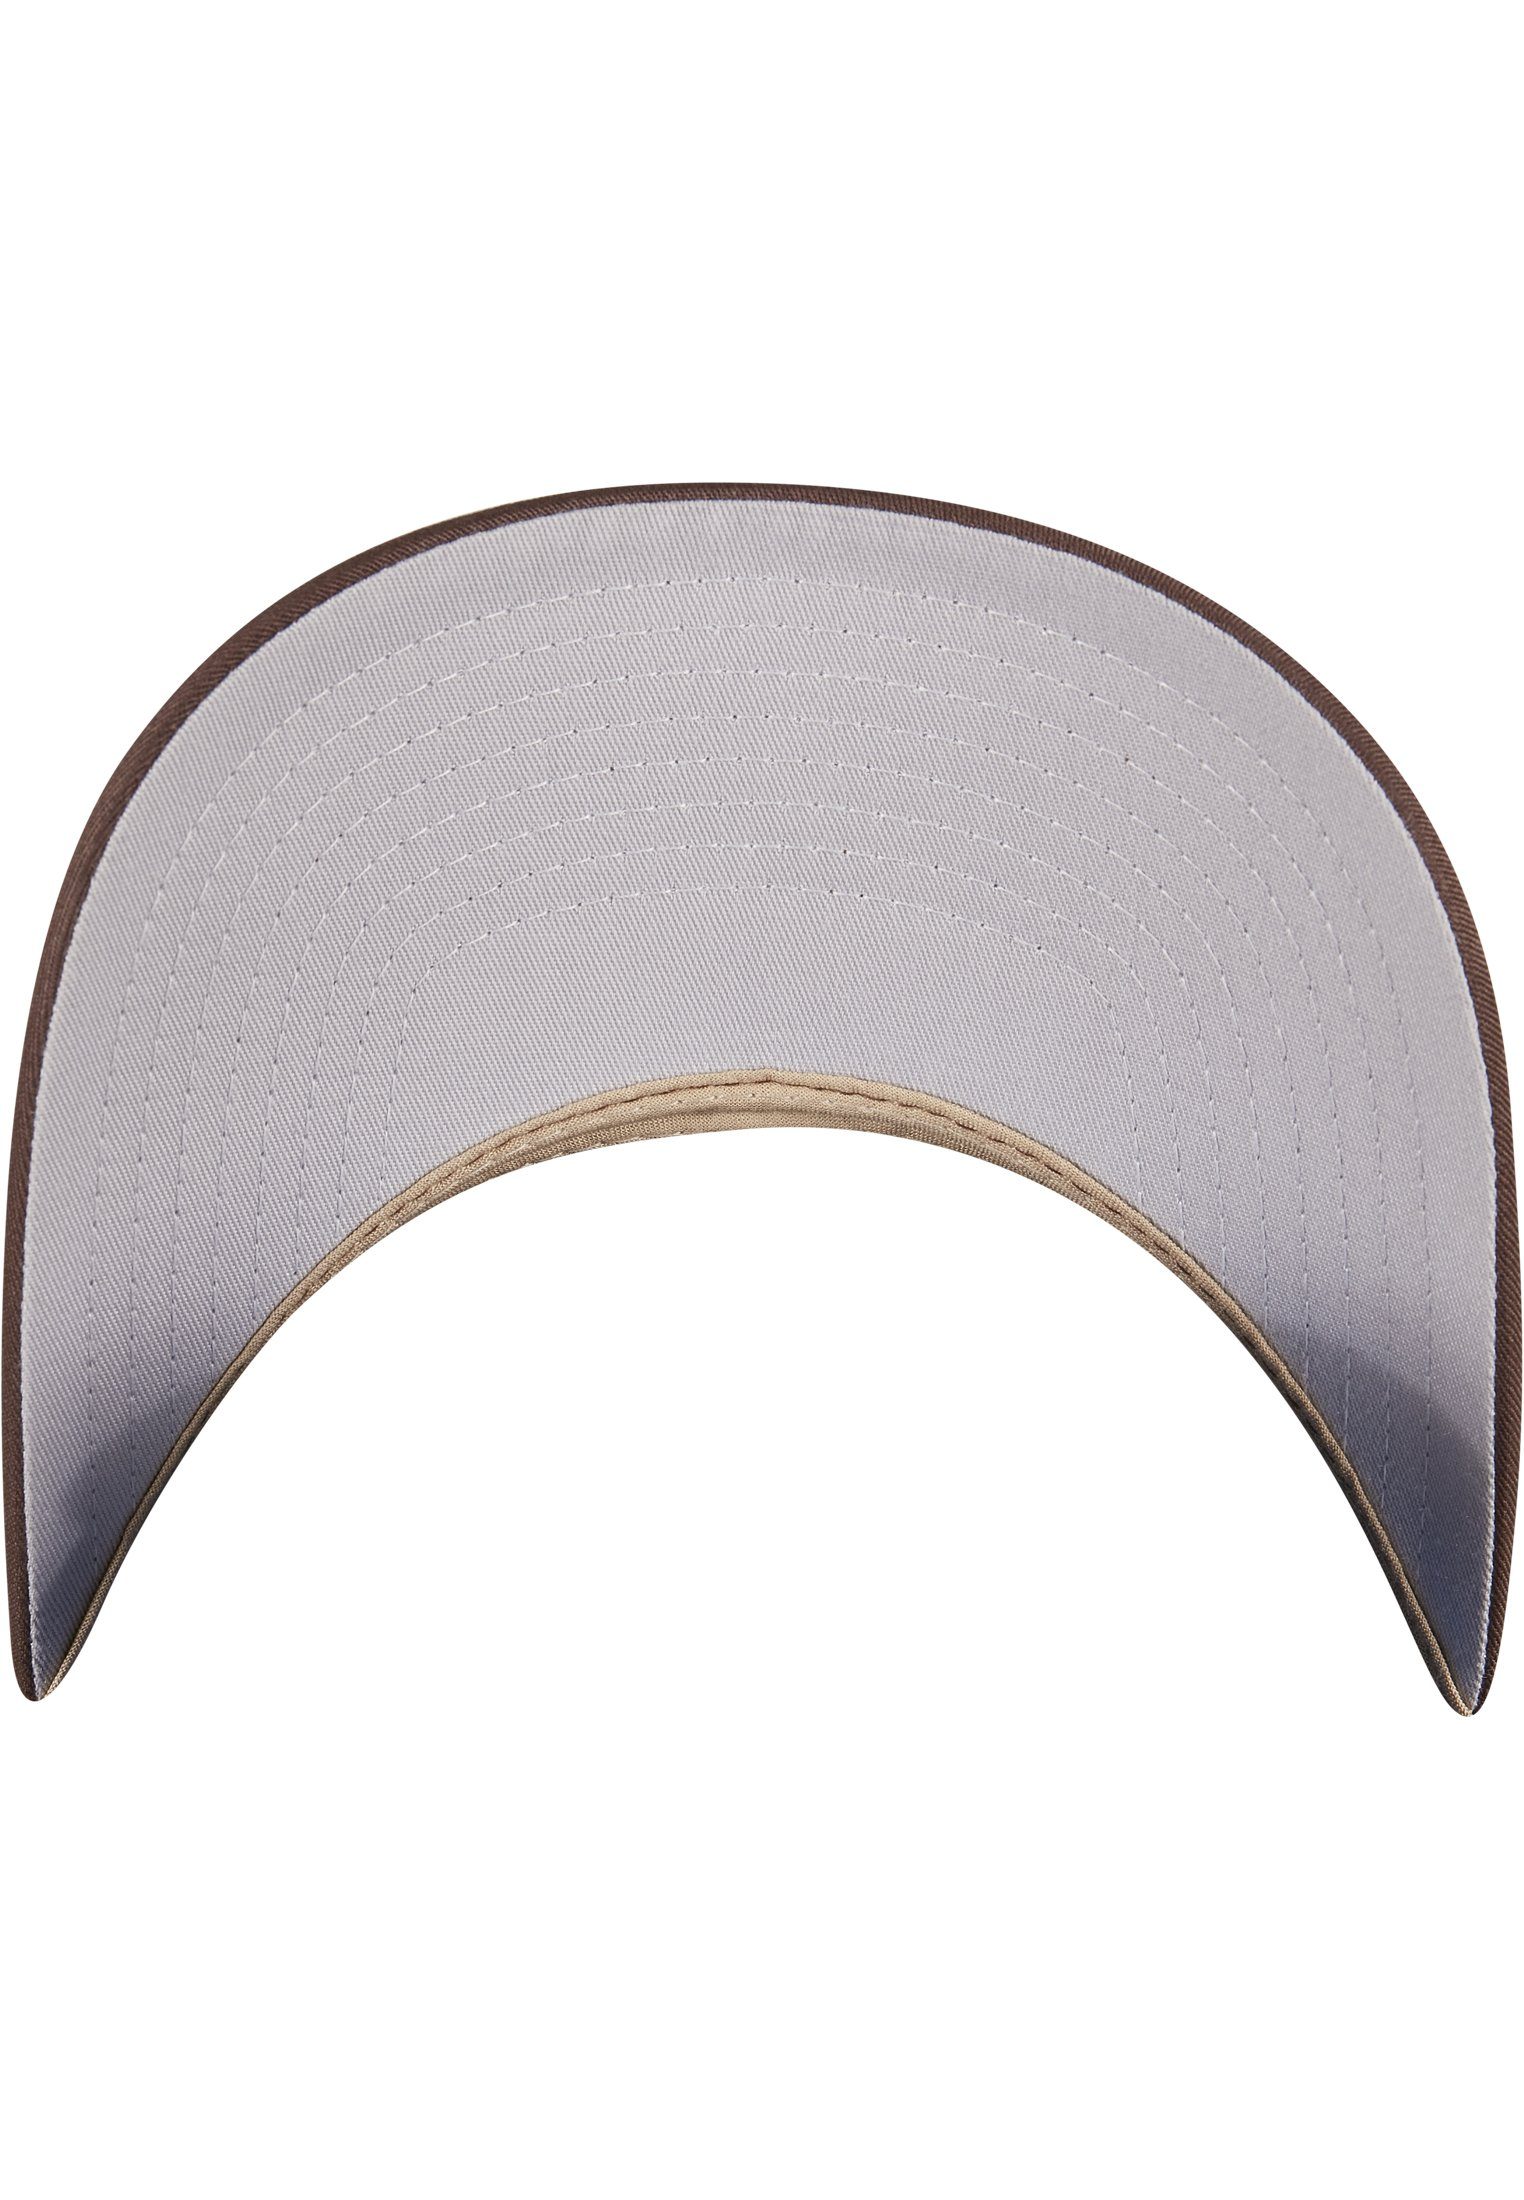 Flexfit Flex Cap Cap brown/khaki 360° Accessoires 2-Tone Omnimesh